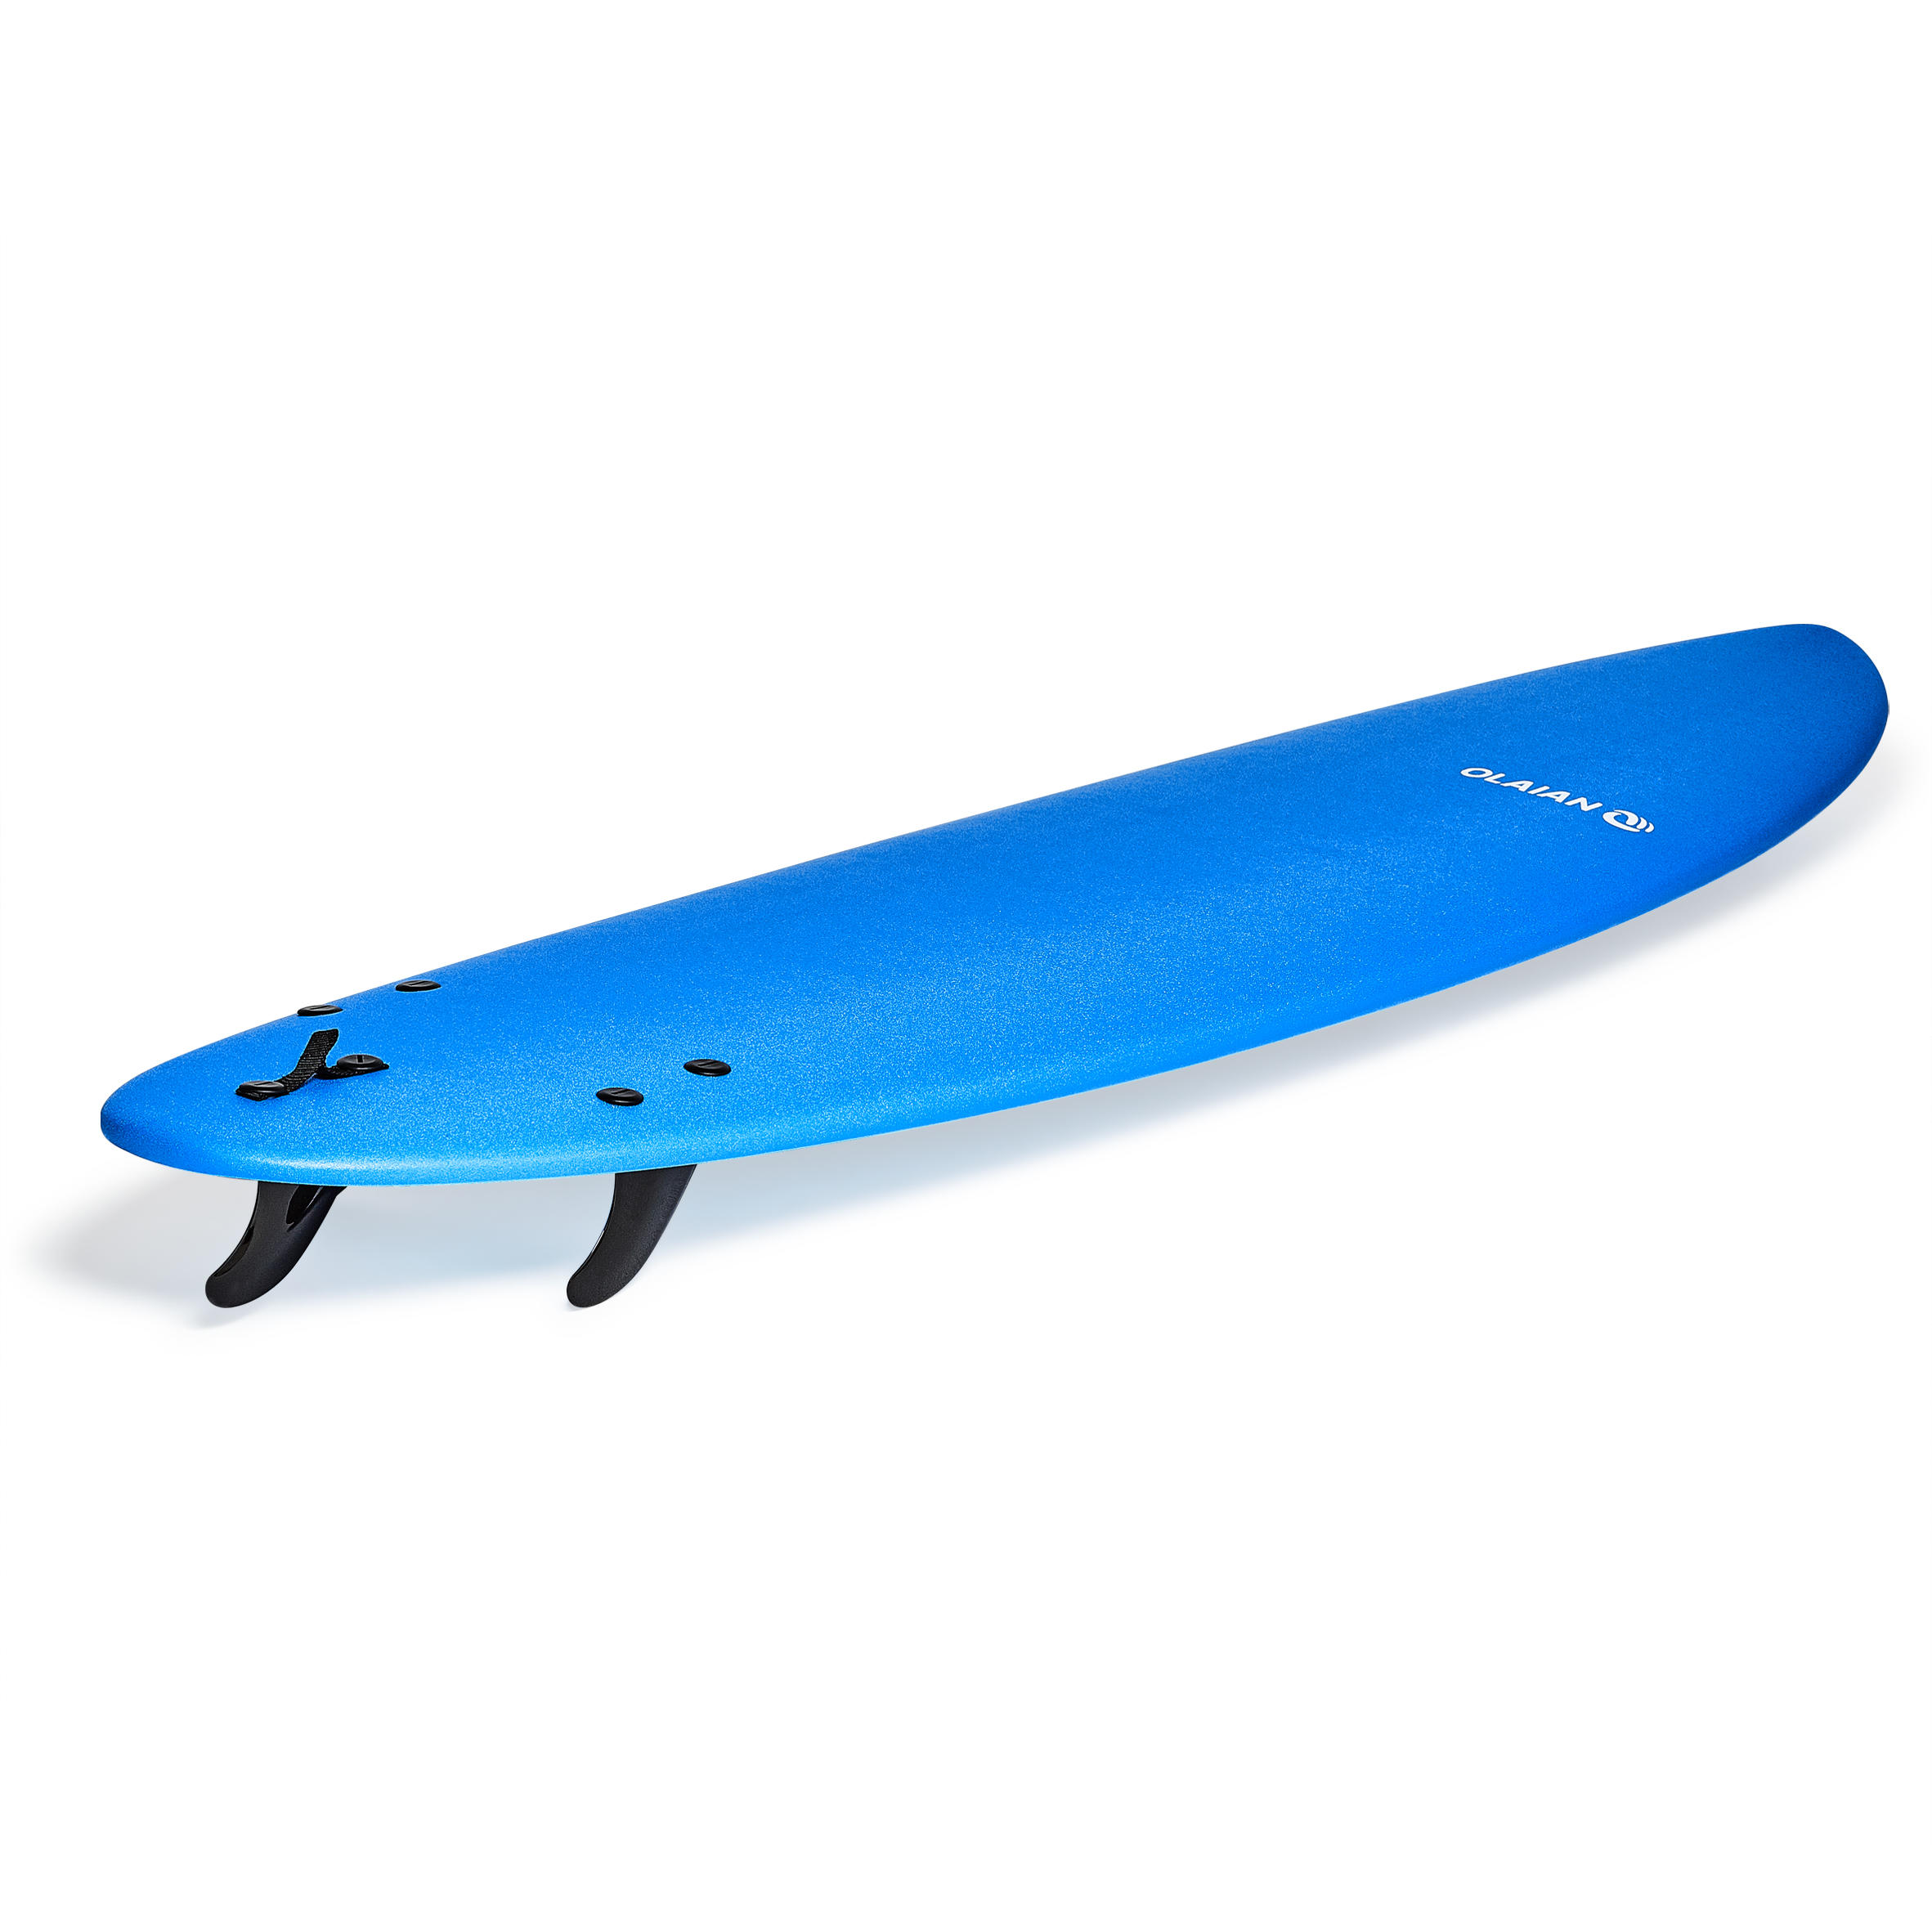 [ส่งฟรี ] SURFBOARD Surfing board เซิร์ฟบอร์ด กระดานโต้คลื่นโฟมรุ่น 100 ขนาด 7 ฟุต มาพร้อมสายโยงและครีบ 3 อัน SURFBOARD Foam 100 7'. Supplied with a leash and 3 fins. surfskate surfboard fin wakeboard ของแท้ รับประกัน